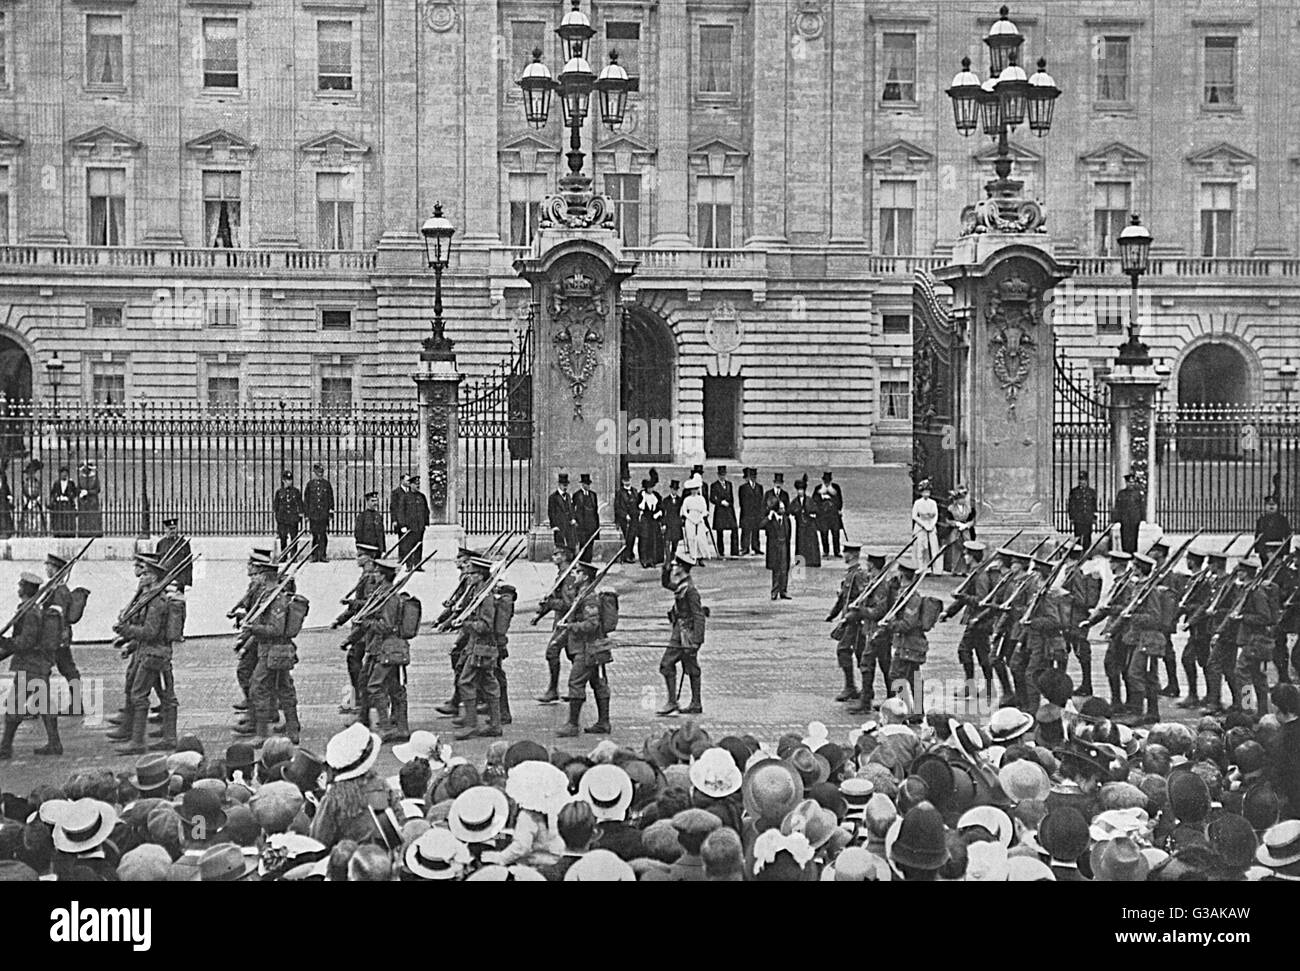 Les Grenadier Guards, dont le Prince de Galles était le lieutenant, recevoir le salut du roi qu'ils défilent devant le palais de Buckingham. Date : 1914 Banque D'Images